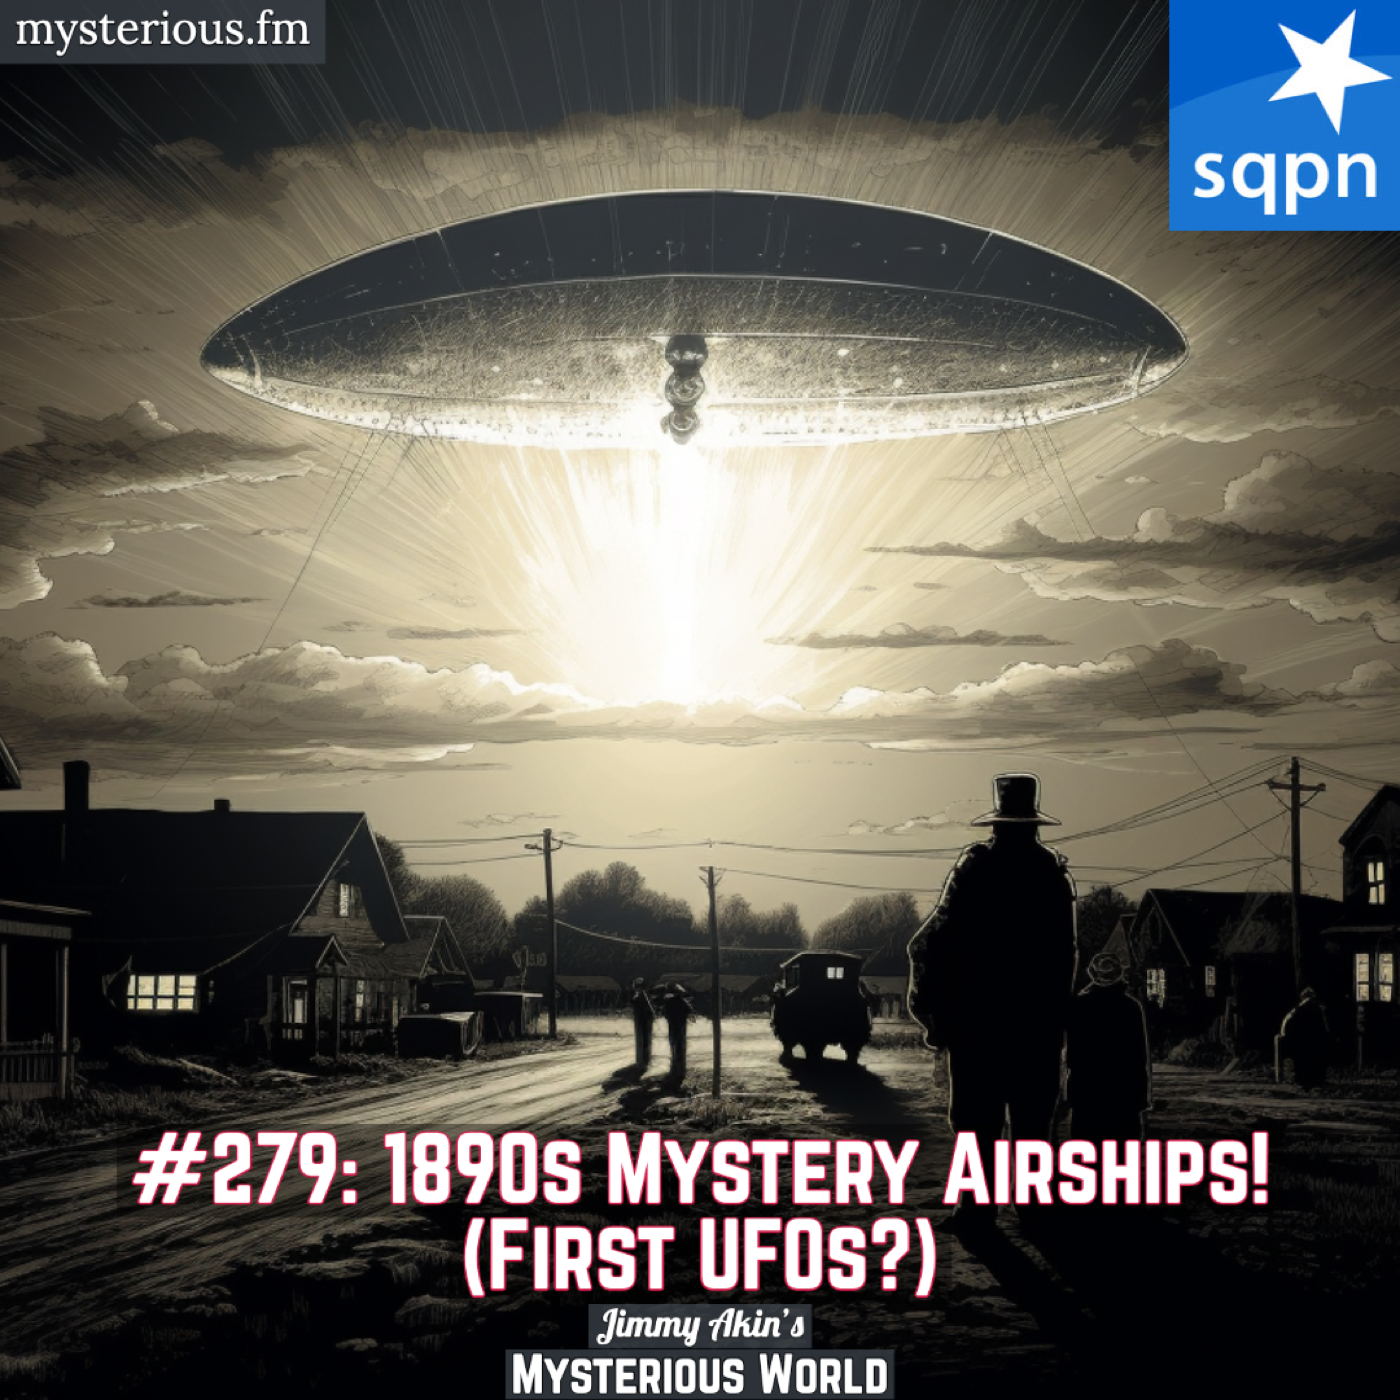 Airship Mystery of 1896 and 1897 (Mystery Airships, Phantom Airships, Ghost Airships, UFOs)